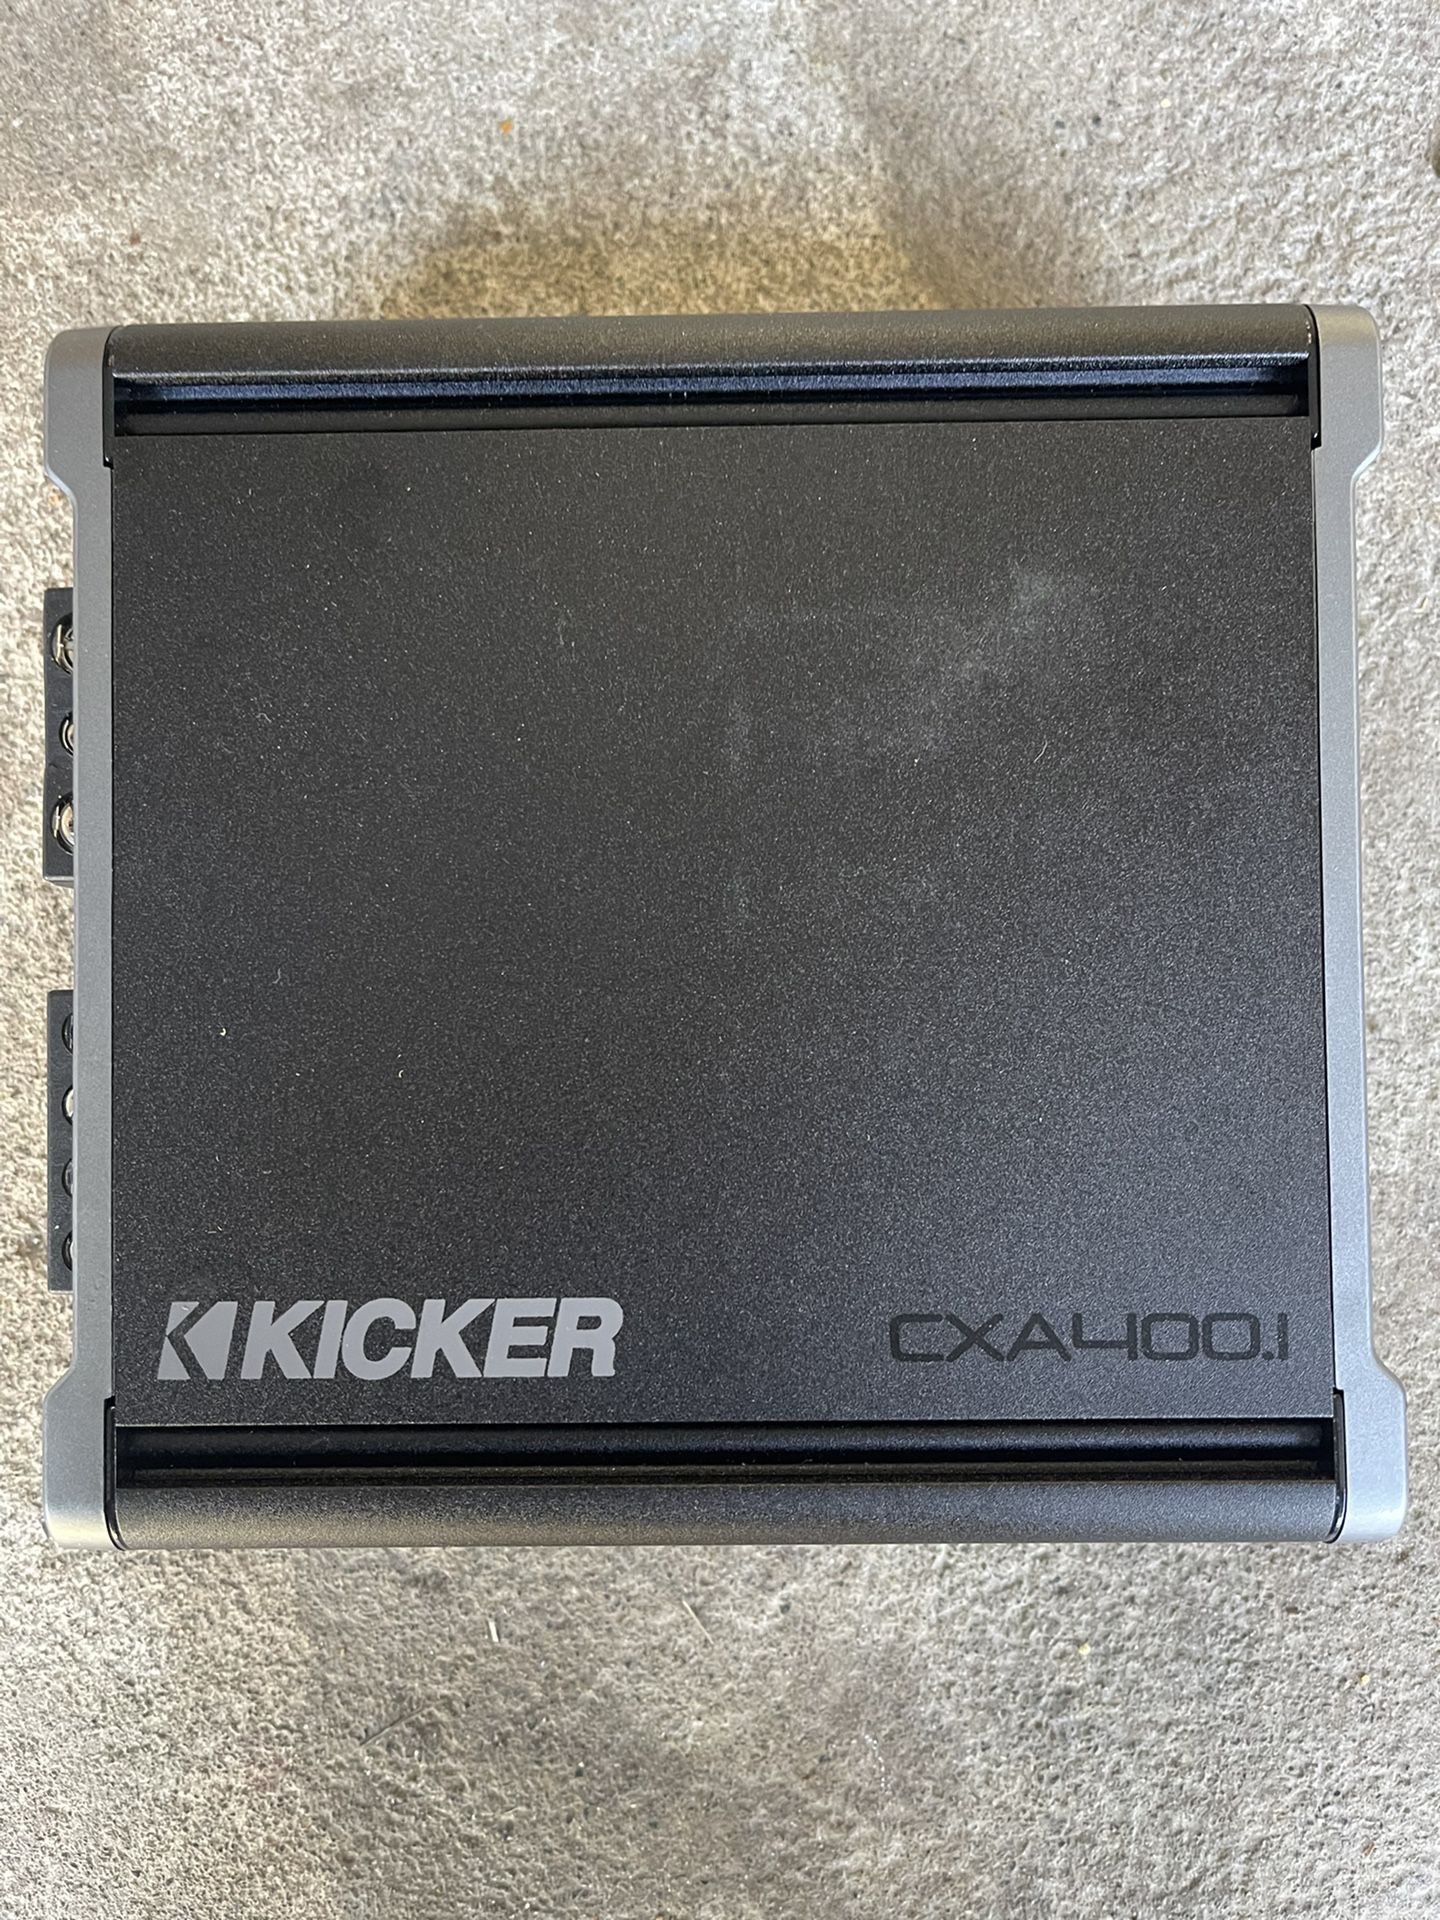 Kicker 400 Watt Amplifier